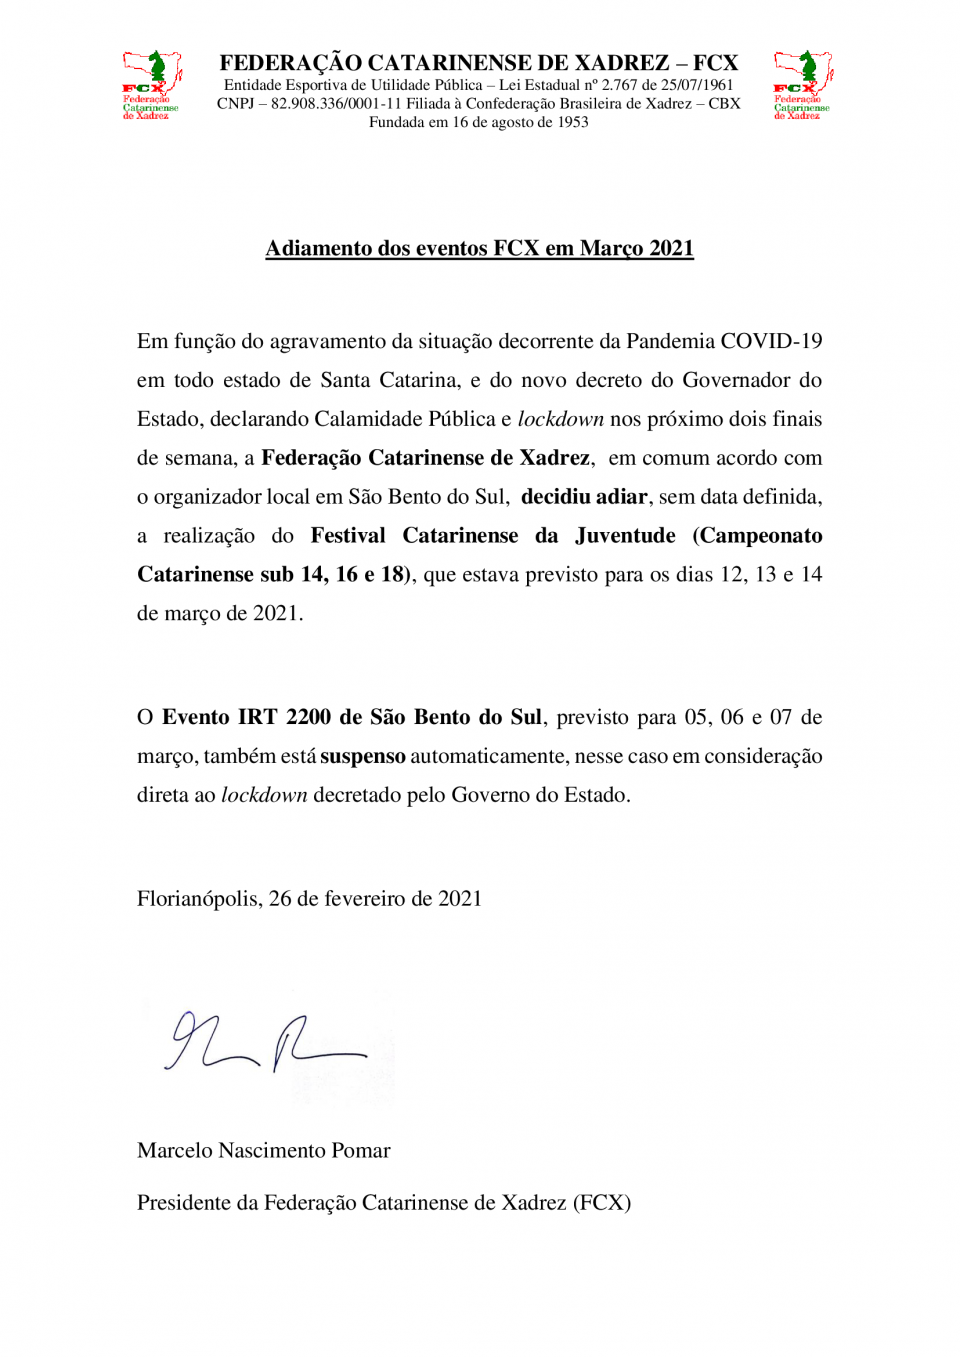 Federação Catarinense de Xadrez - FCX A Federação Catarinense de Xadrez, por meio de seu Presidente Marcelo Pomar, divulga a seguinte nota oficial: